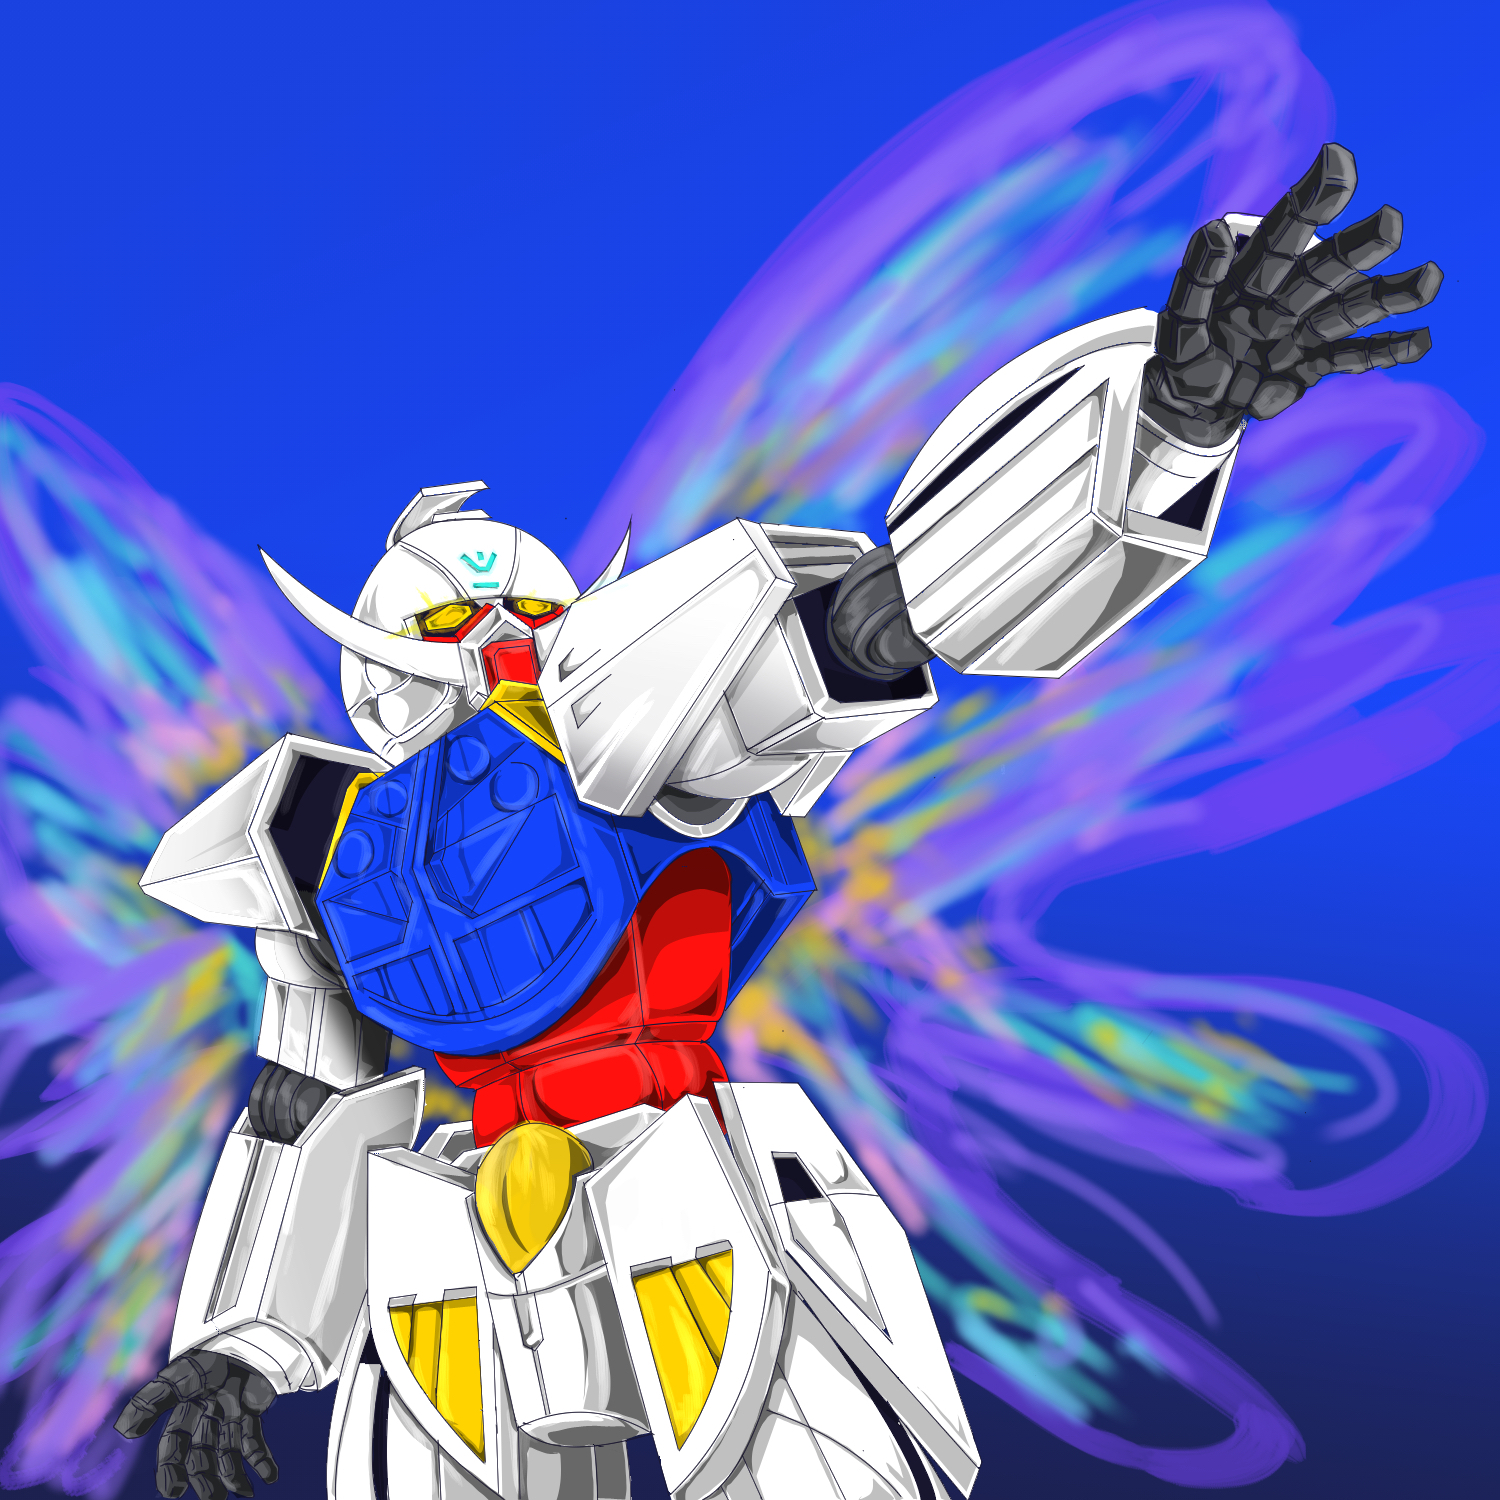 Anime 1500x1500 anime mechs Super Robot Taisen ∀ Gundam System-∀99 ∀ Gundam Gundam artwork digital art fan art